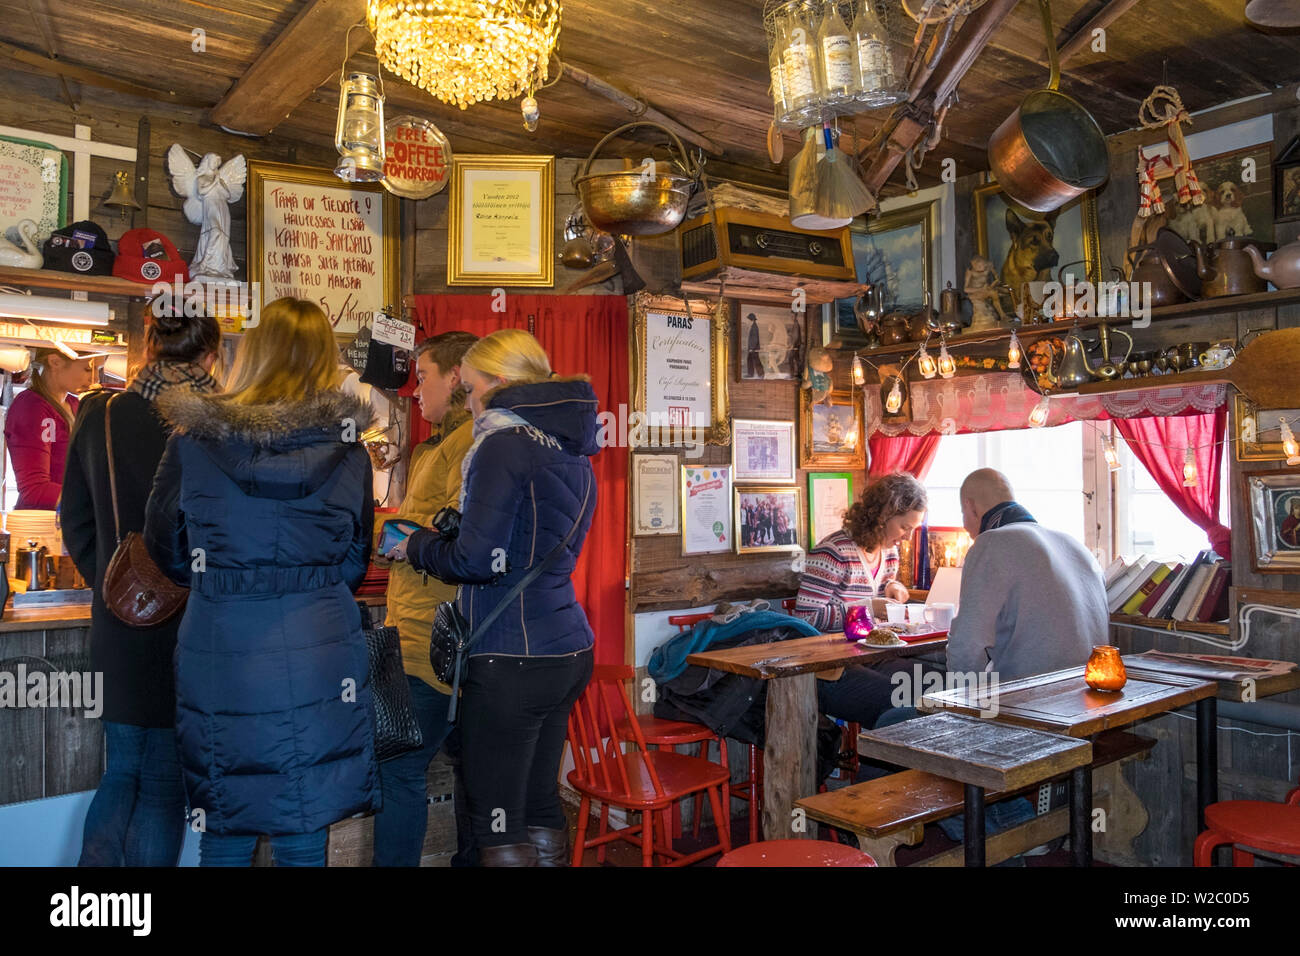 Interno del Cafe regata in una piccola capanna in legno, Helsinki, Finlandia Foto Stock